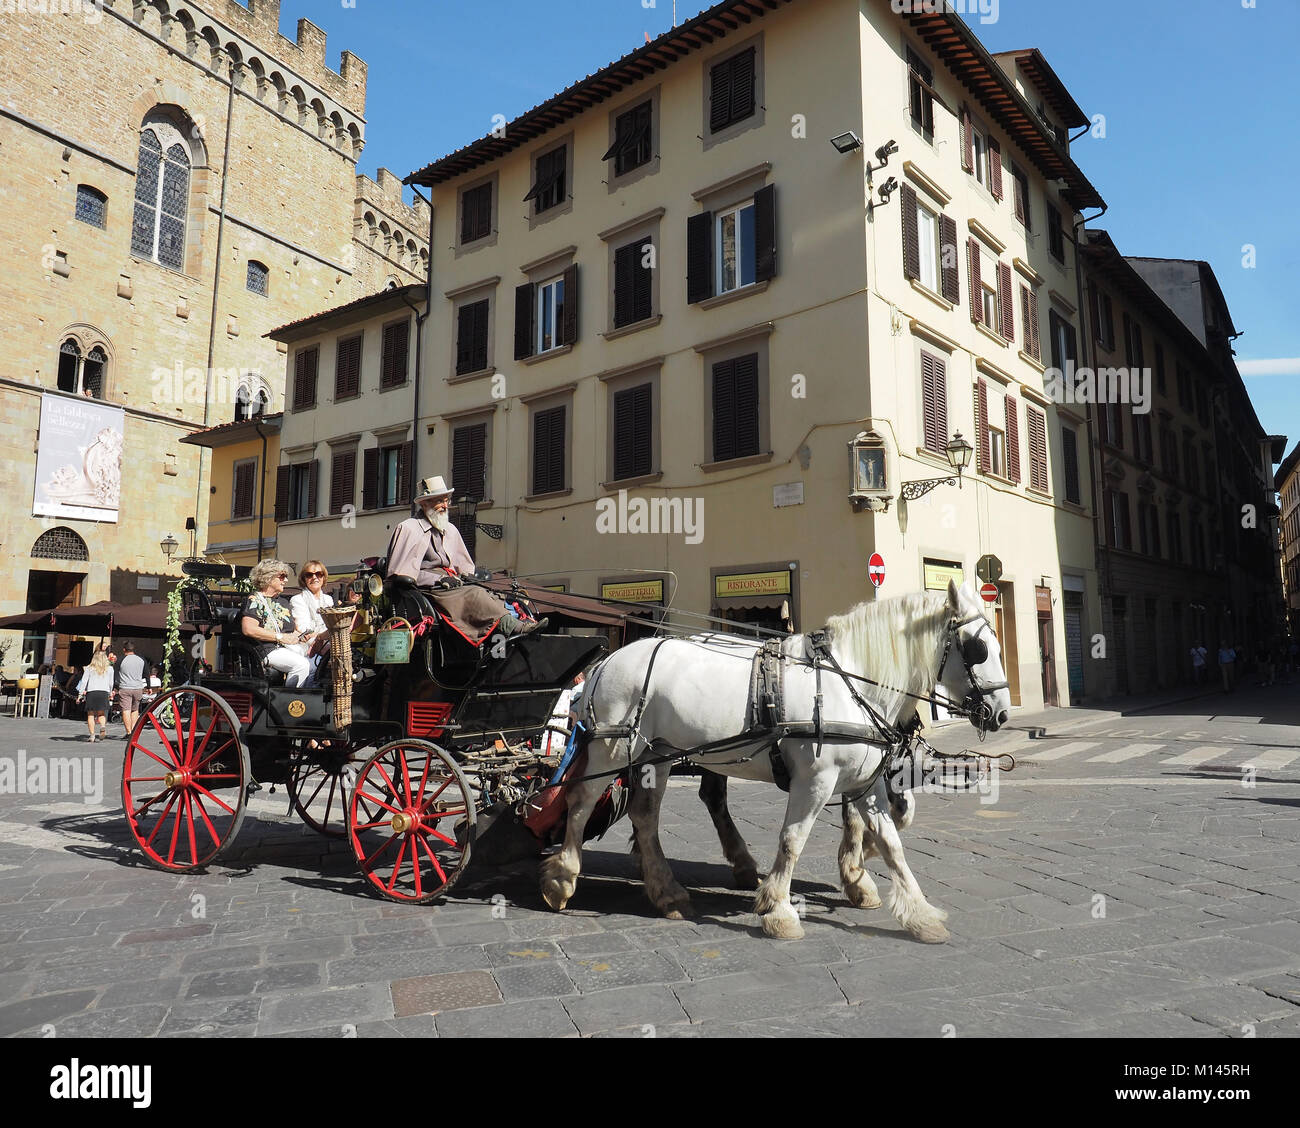 Caballo carriagein turística ciudad vieja Florencia Toscana Italia Europa central, Foto de stock